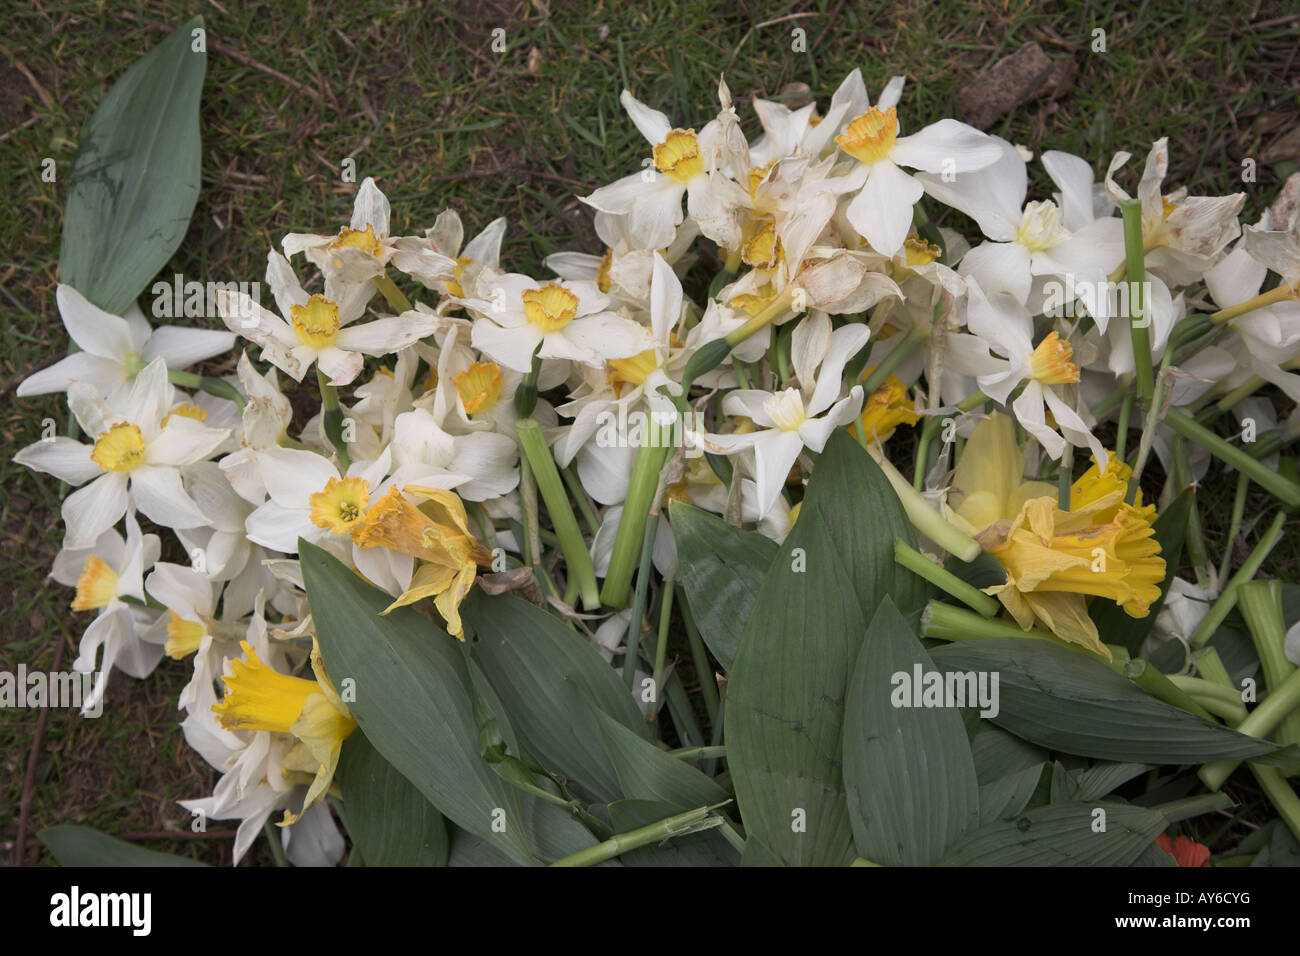 Narciso flores descarta sobre hierba Foto de stock